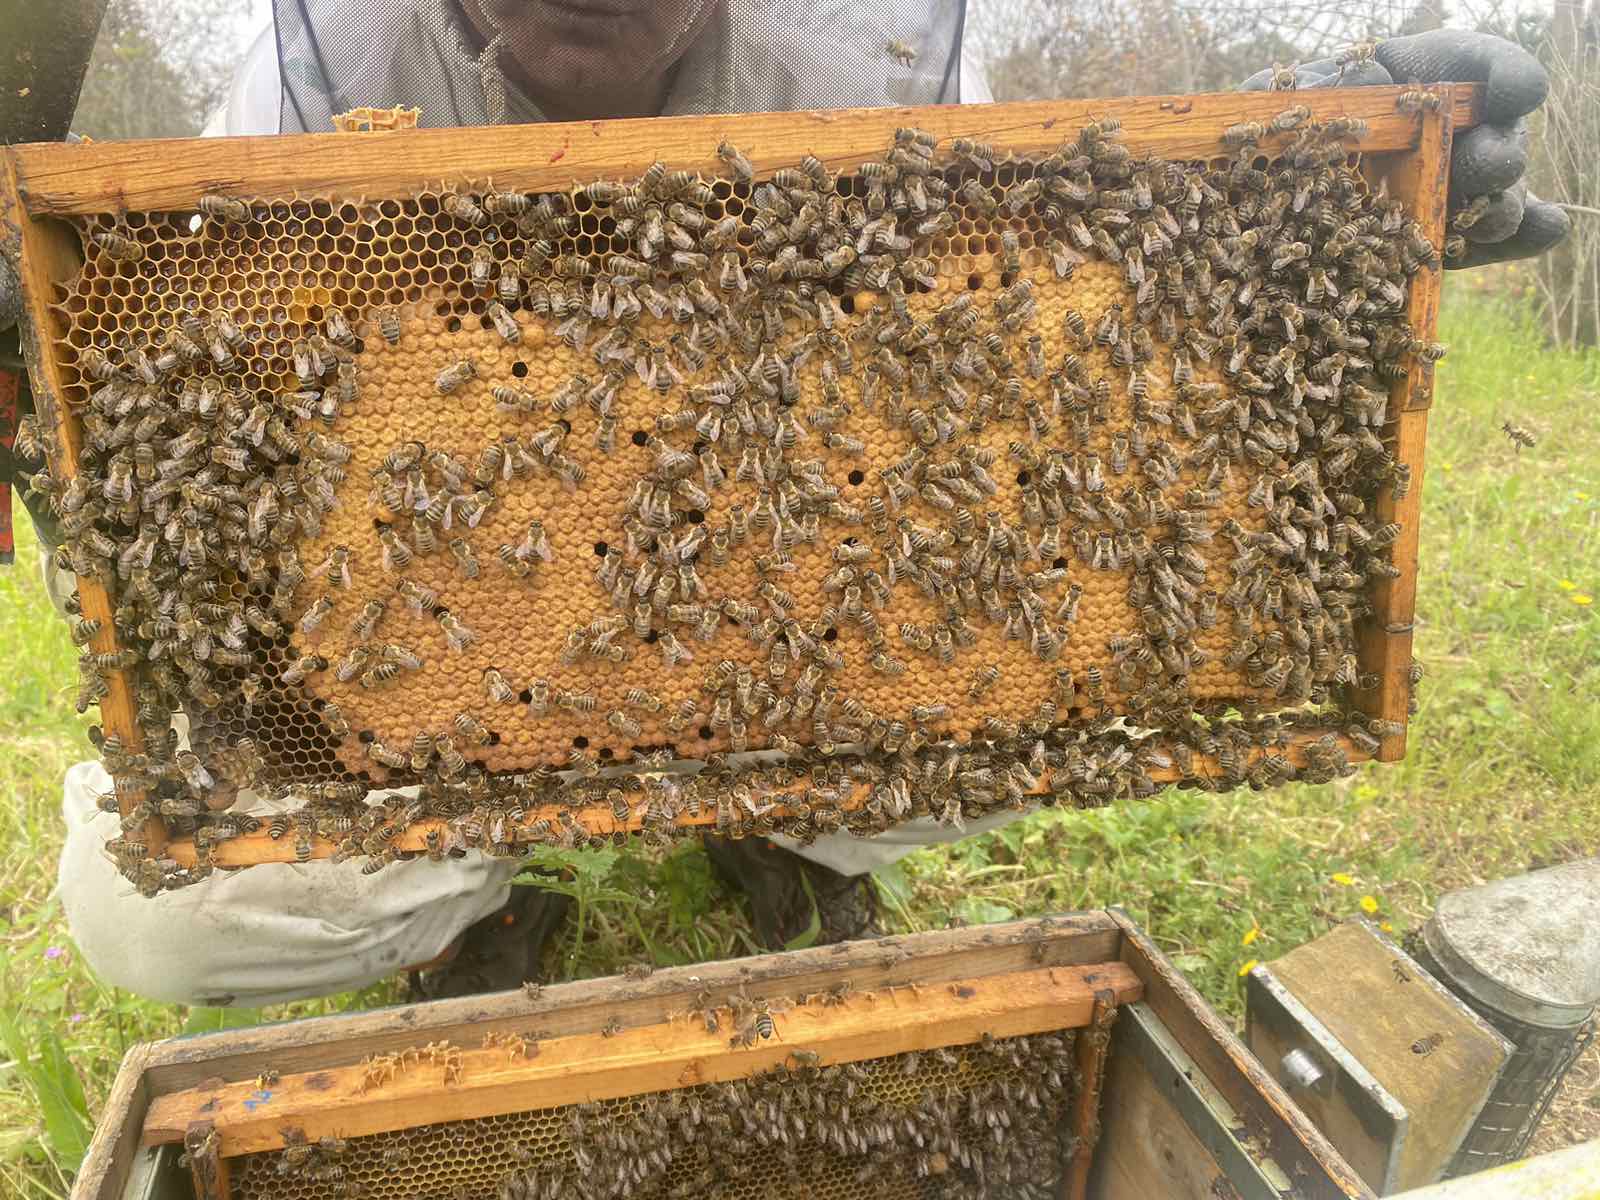 Trasferire ad altre colonie solo api e/o telaini esenti da malattie